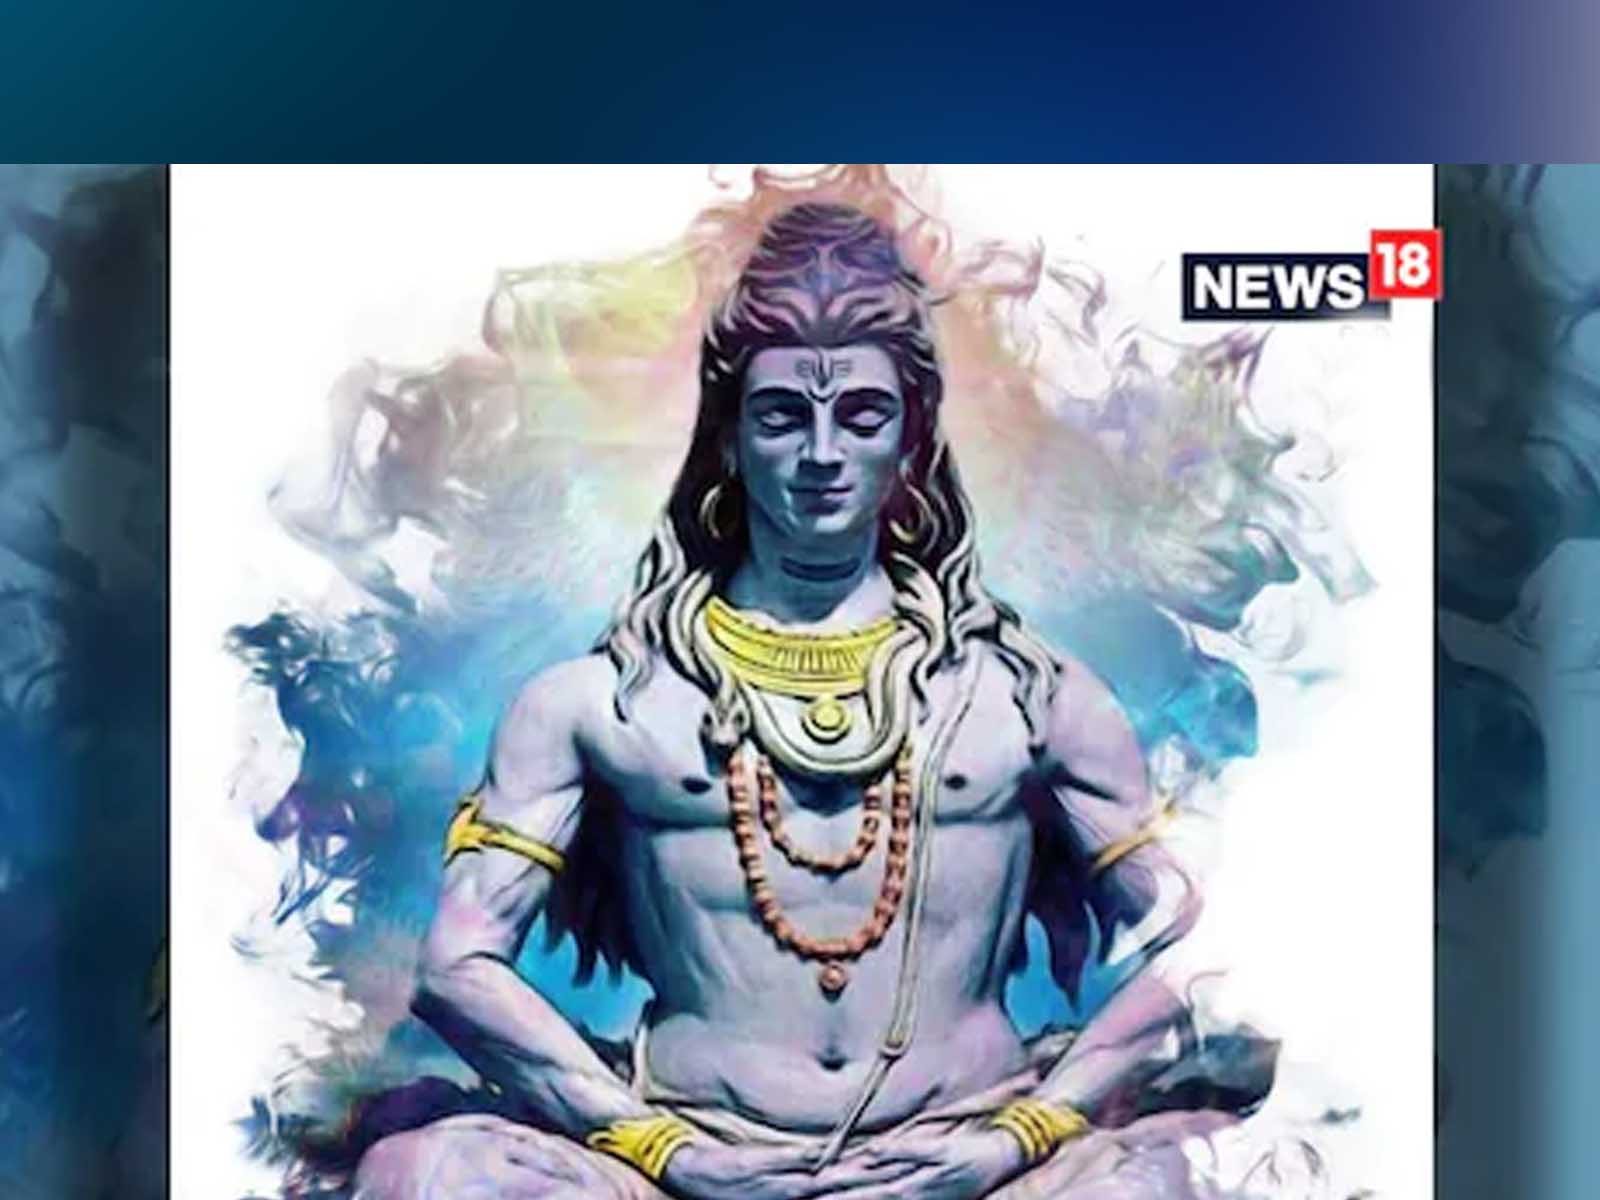 Lord Shiva: ਭਗਵਾਨ ਸ਼ਿਵ ਜੀ ਦੀ ਘਰ ਵਿੱਚ ਰੱਖਦੇ ਹੋ ਤਸਵੀਰ ਜਾਂ ਮੂਰਤੀ, ਤਾਂ ਇਸ ਗੱਲ ਵੱਲ ਦਿਓ ਧਿਆਨ 